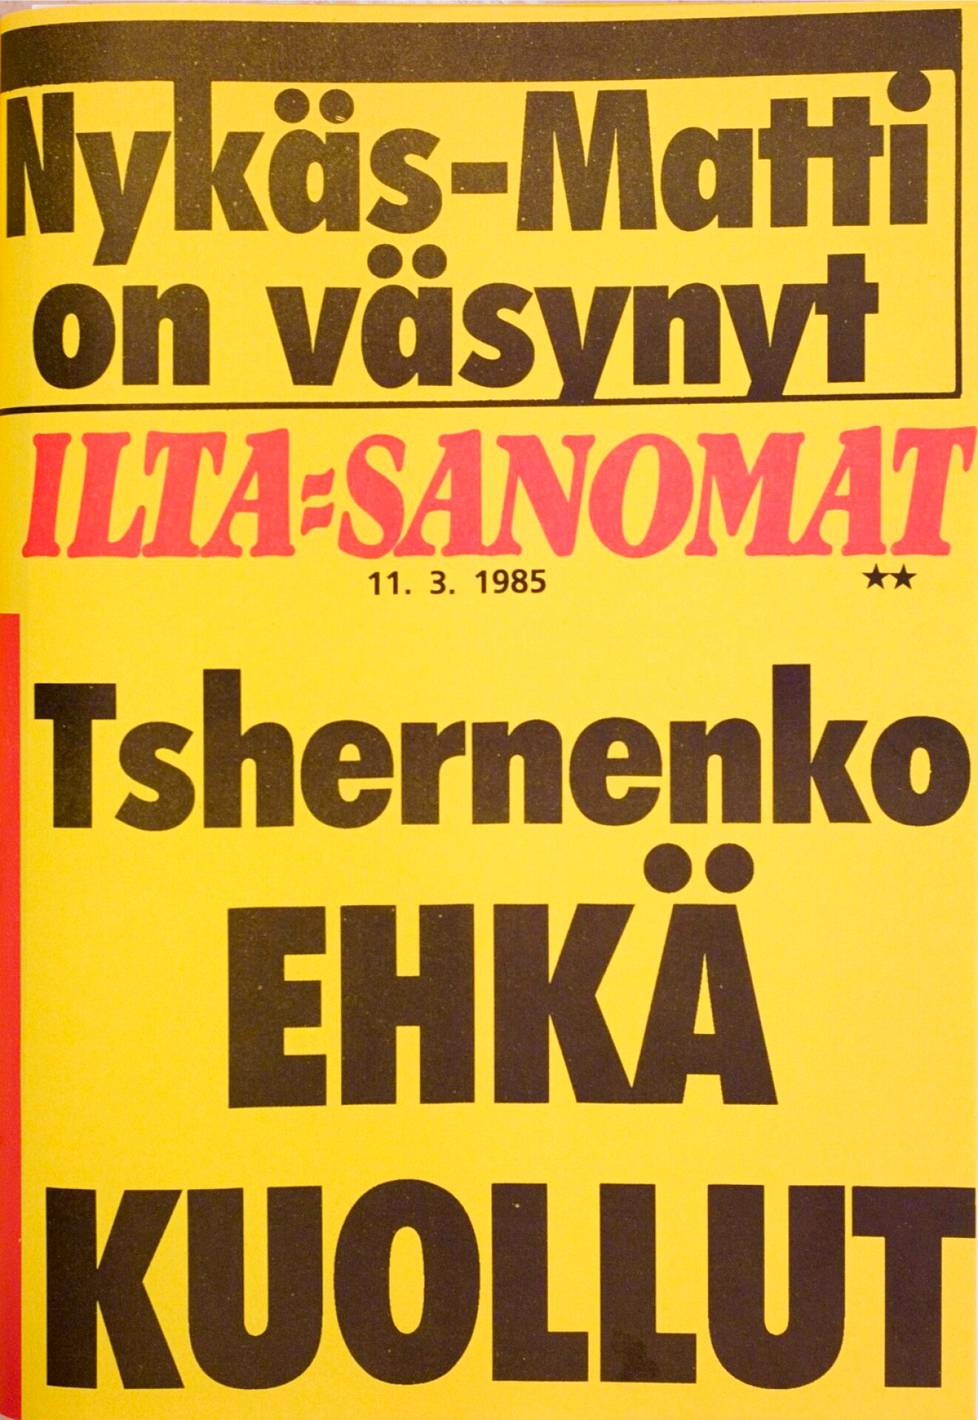 Ilta-Sanomien lööppi 11.3.1985.